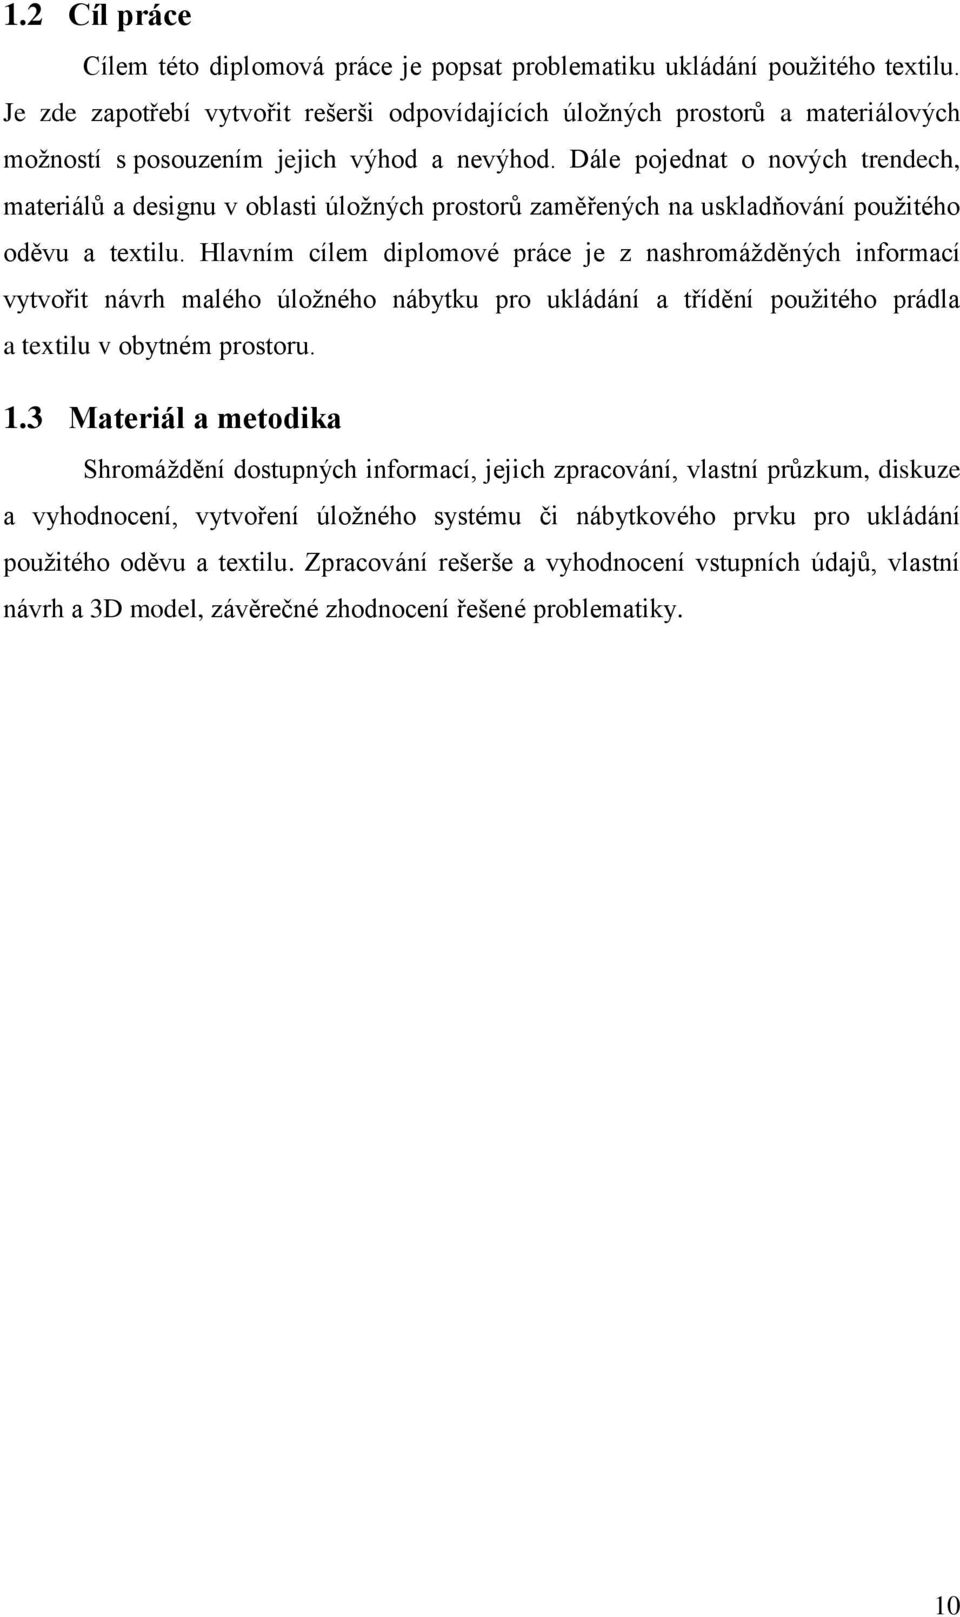 Mendelova univerzita v Brně - PDF Stažení zdarma